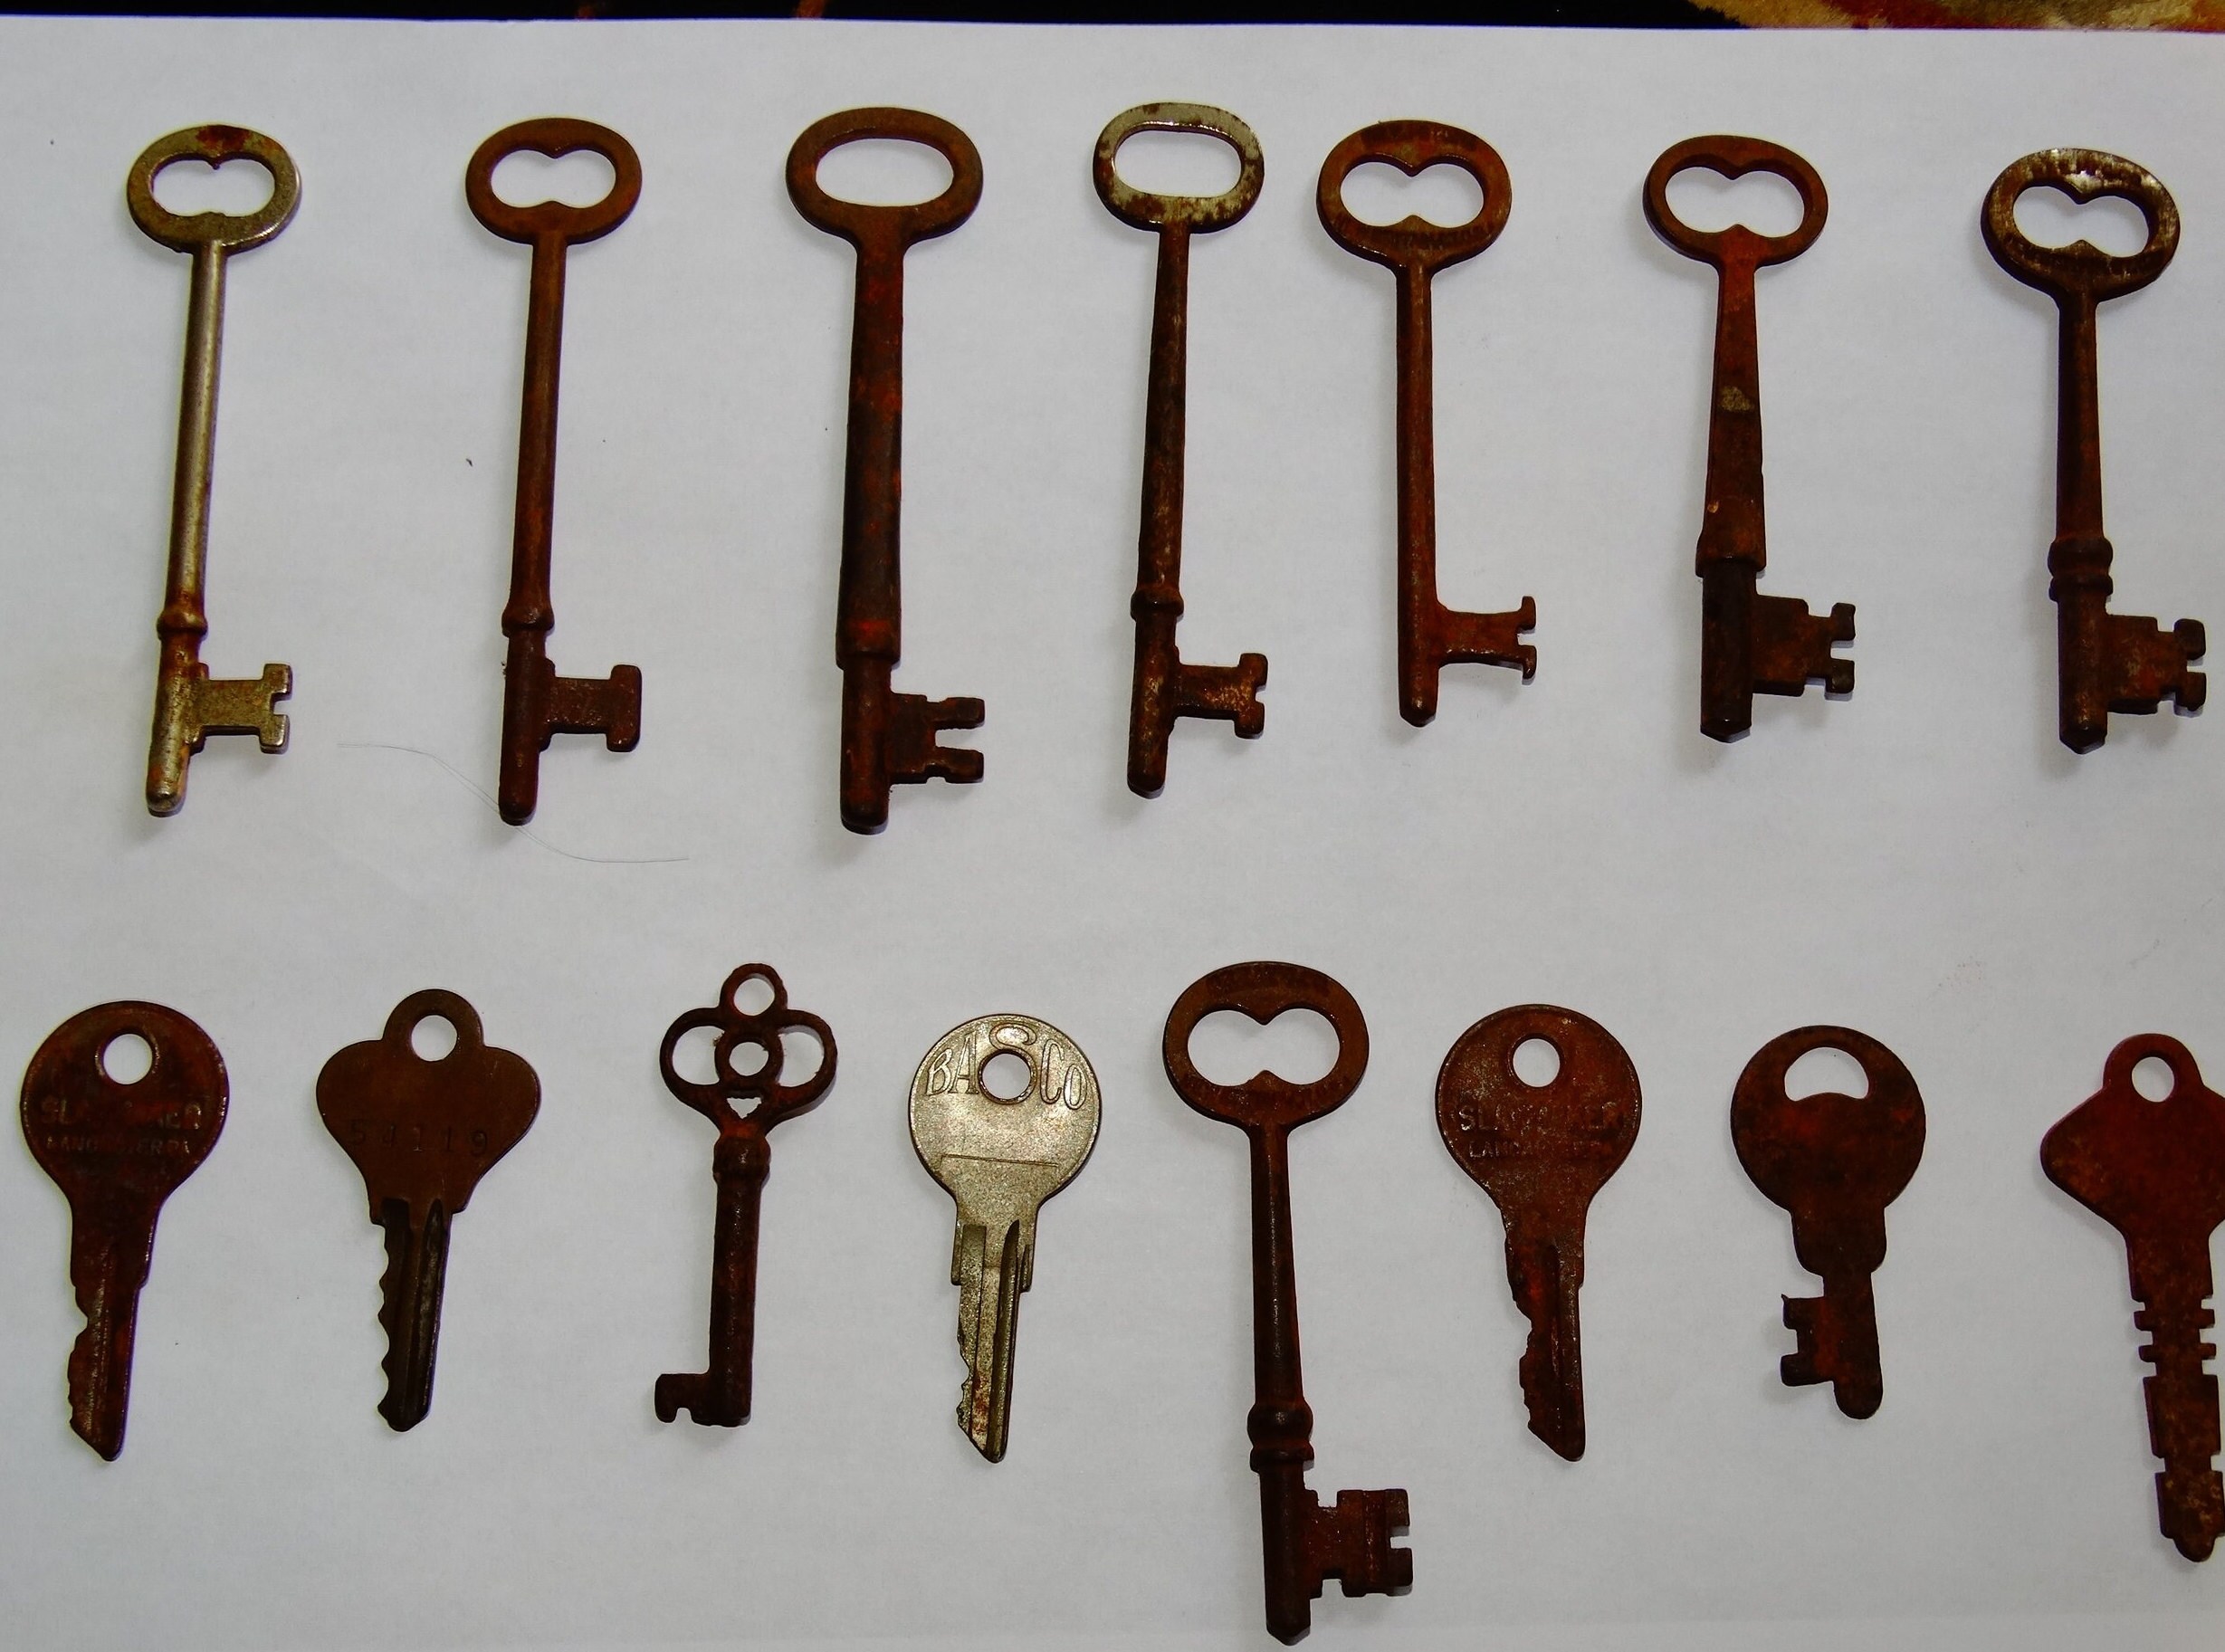 Vintage Keys, Skeleton, Jail Keys, Handcuff Keys, Rusty Keys